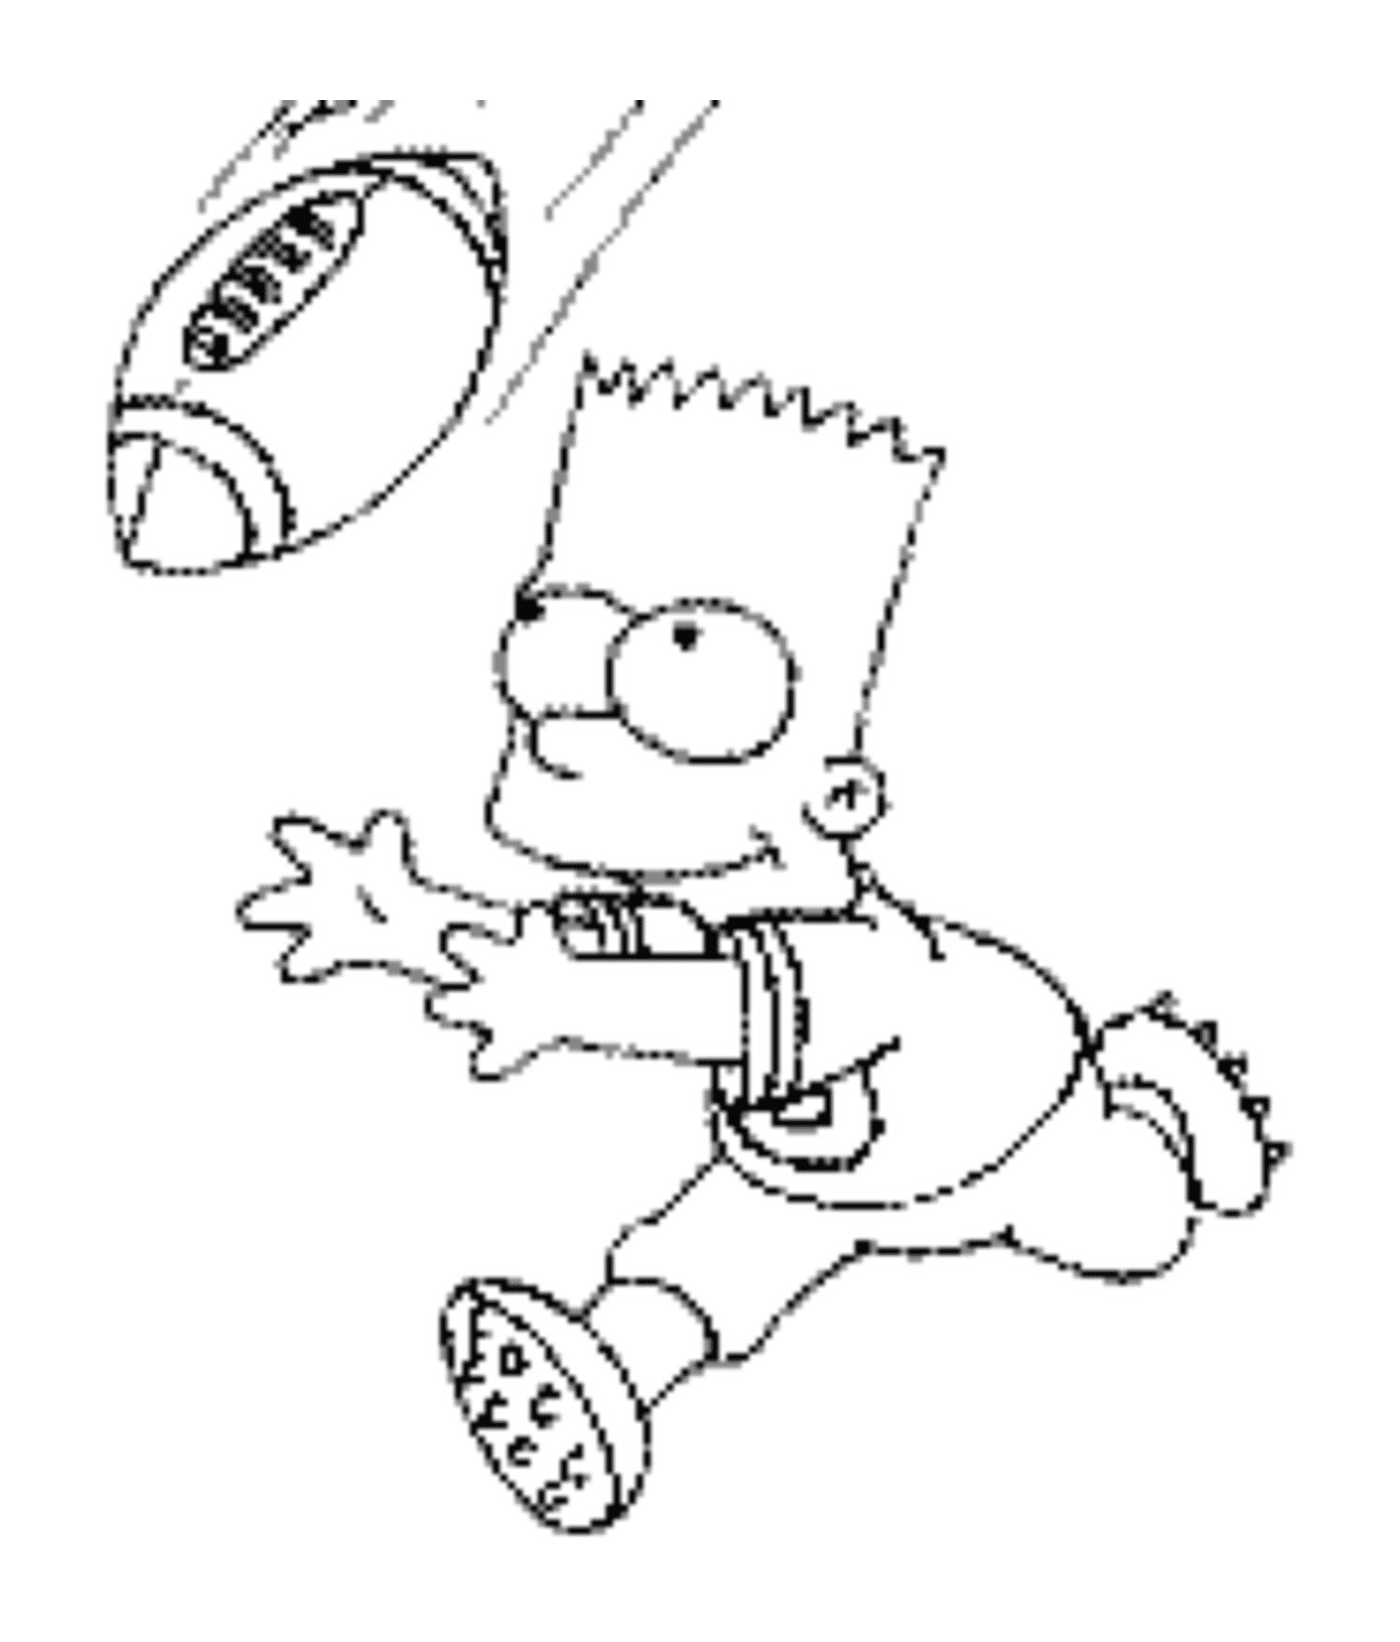  Барт играет в американский футбол 